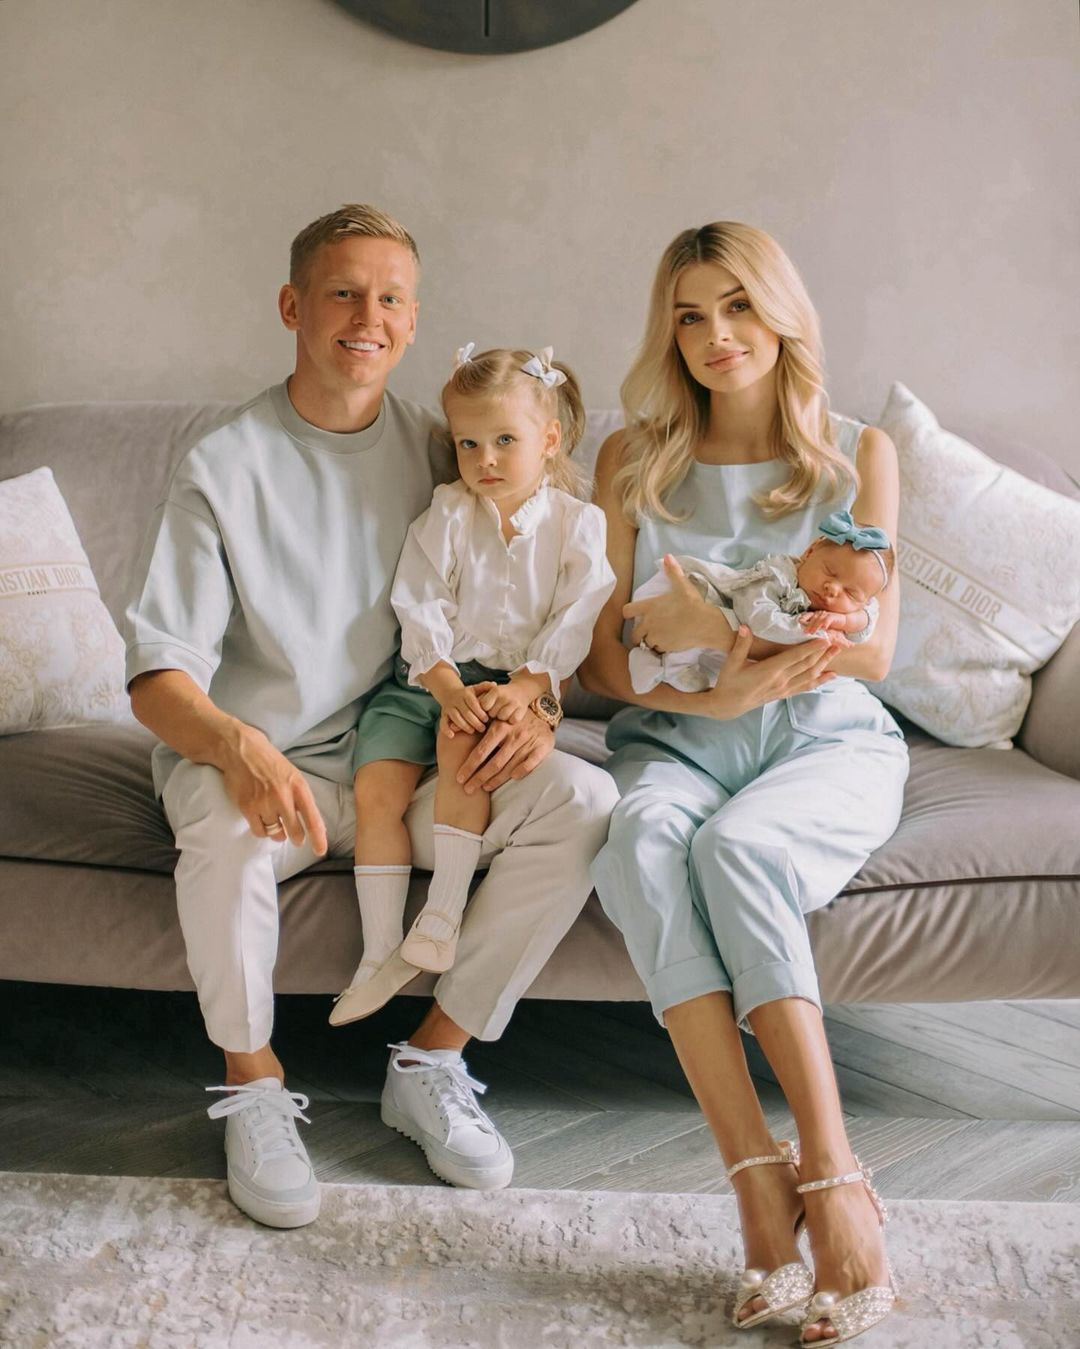 Сім'я Зінченко святкує не лише день народження футбольної зірки, але і тривожить серця прихильників фото їх 4-місячної доньки.  